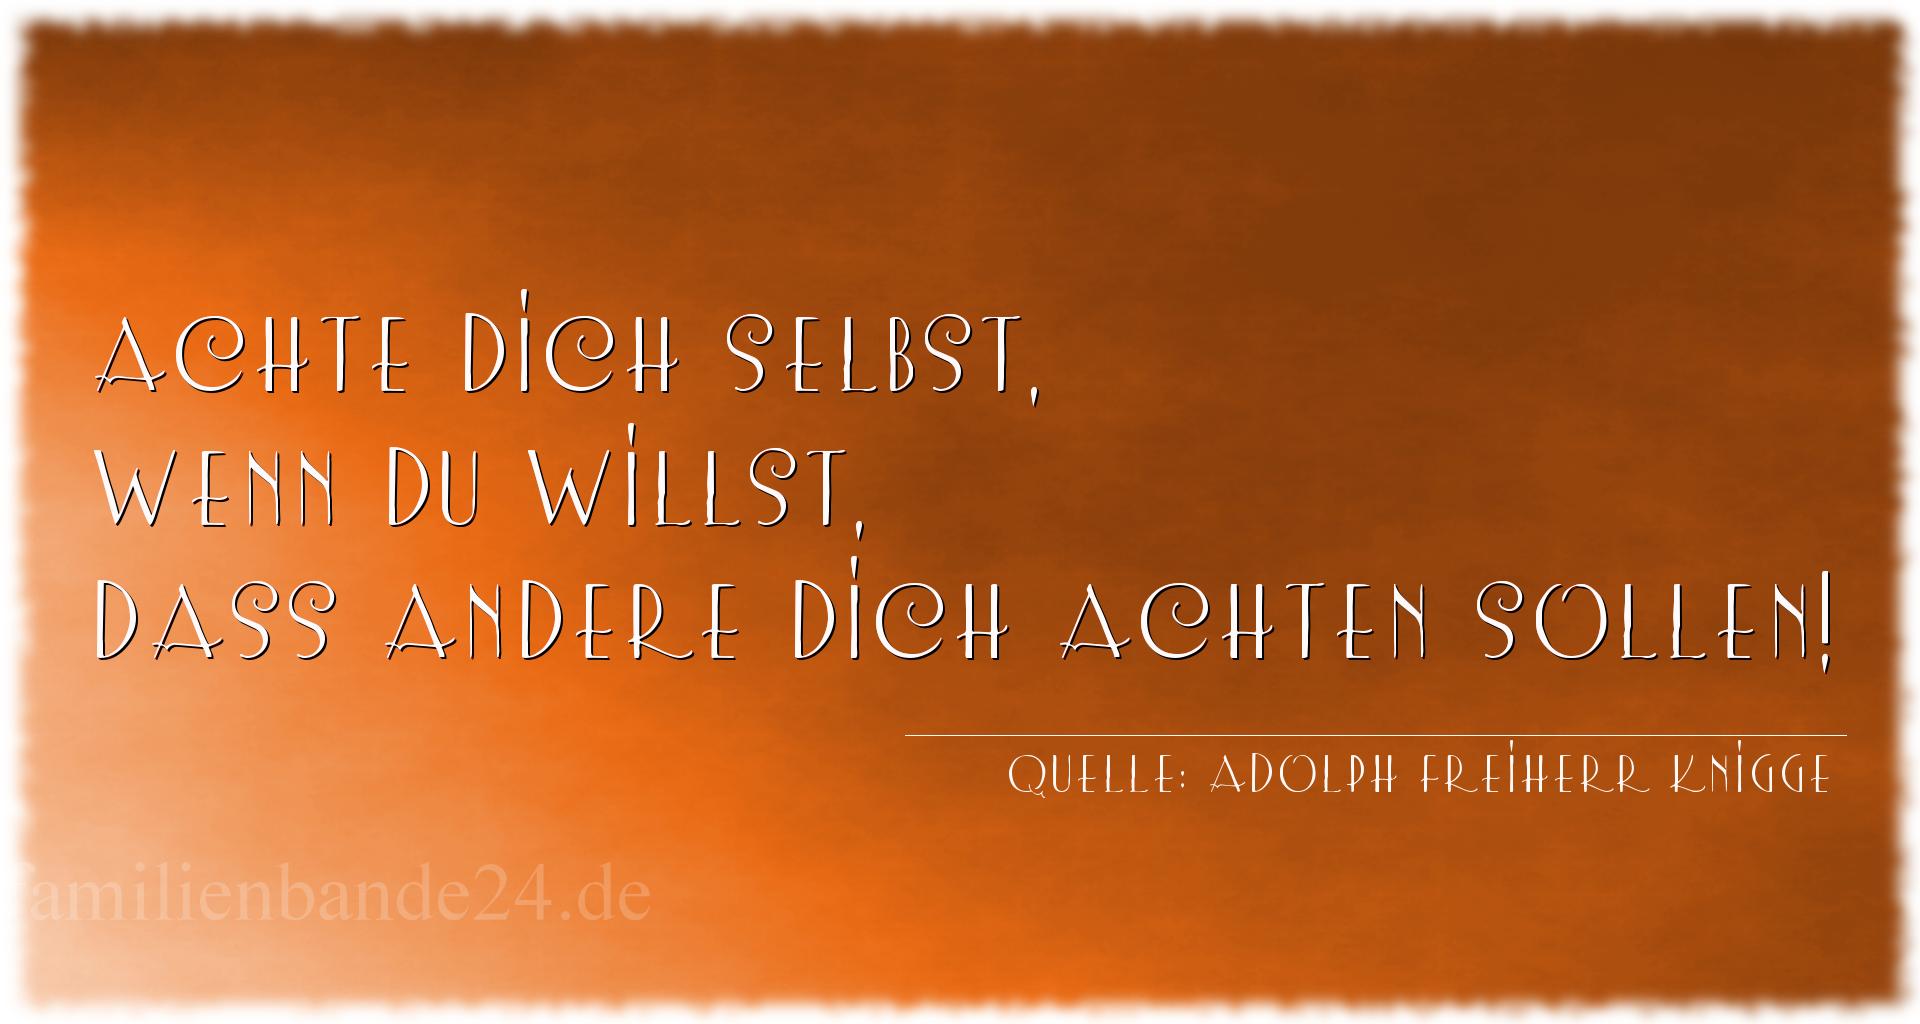 Vorschaubild  zu Aphorismus  No. 1186  (von Adolph Freiherr Knigge)